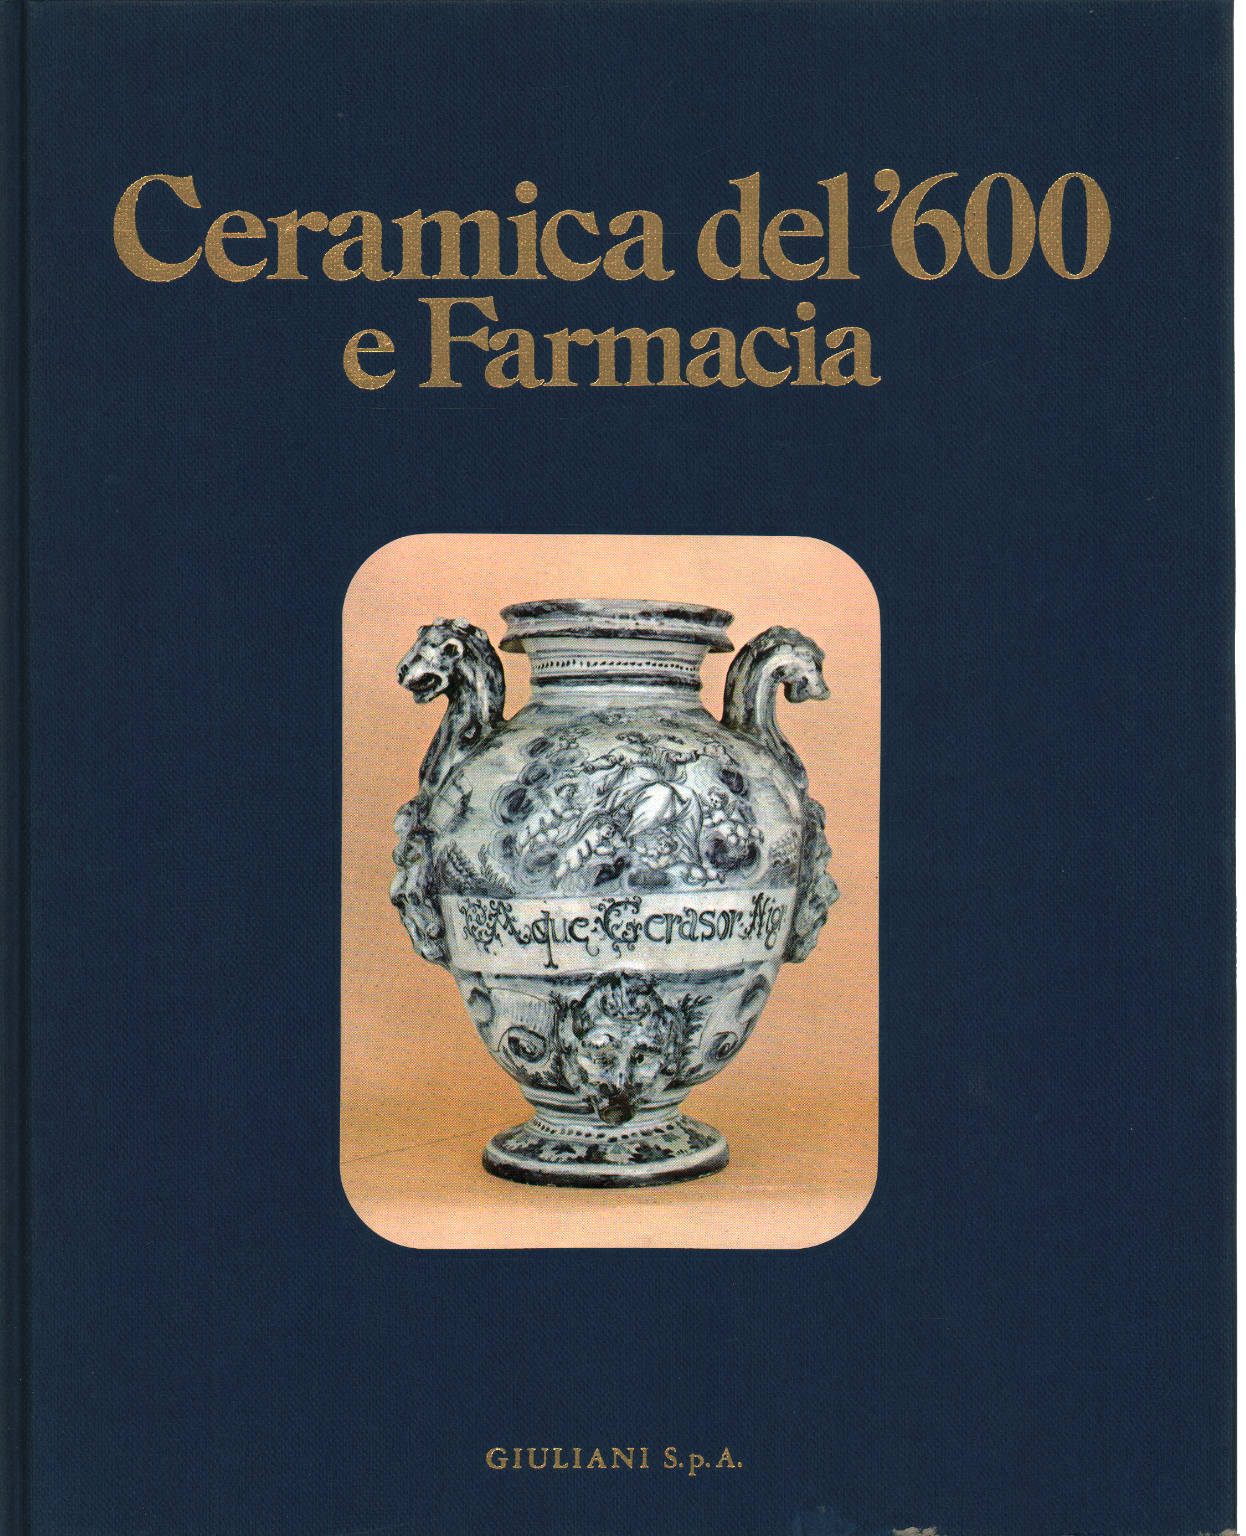 Keramik und Pharmazie aus dem 17. Jahrhundert, Giorgio Lise